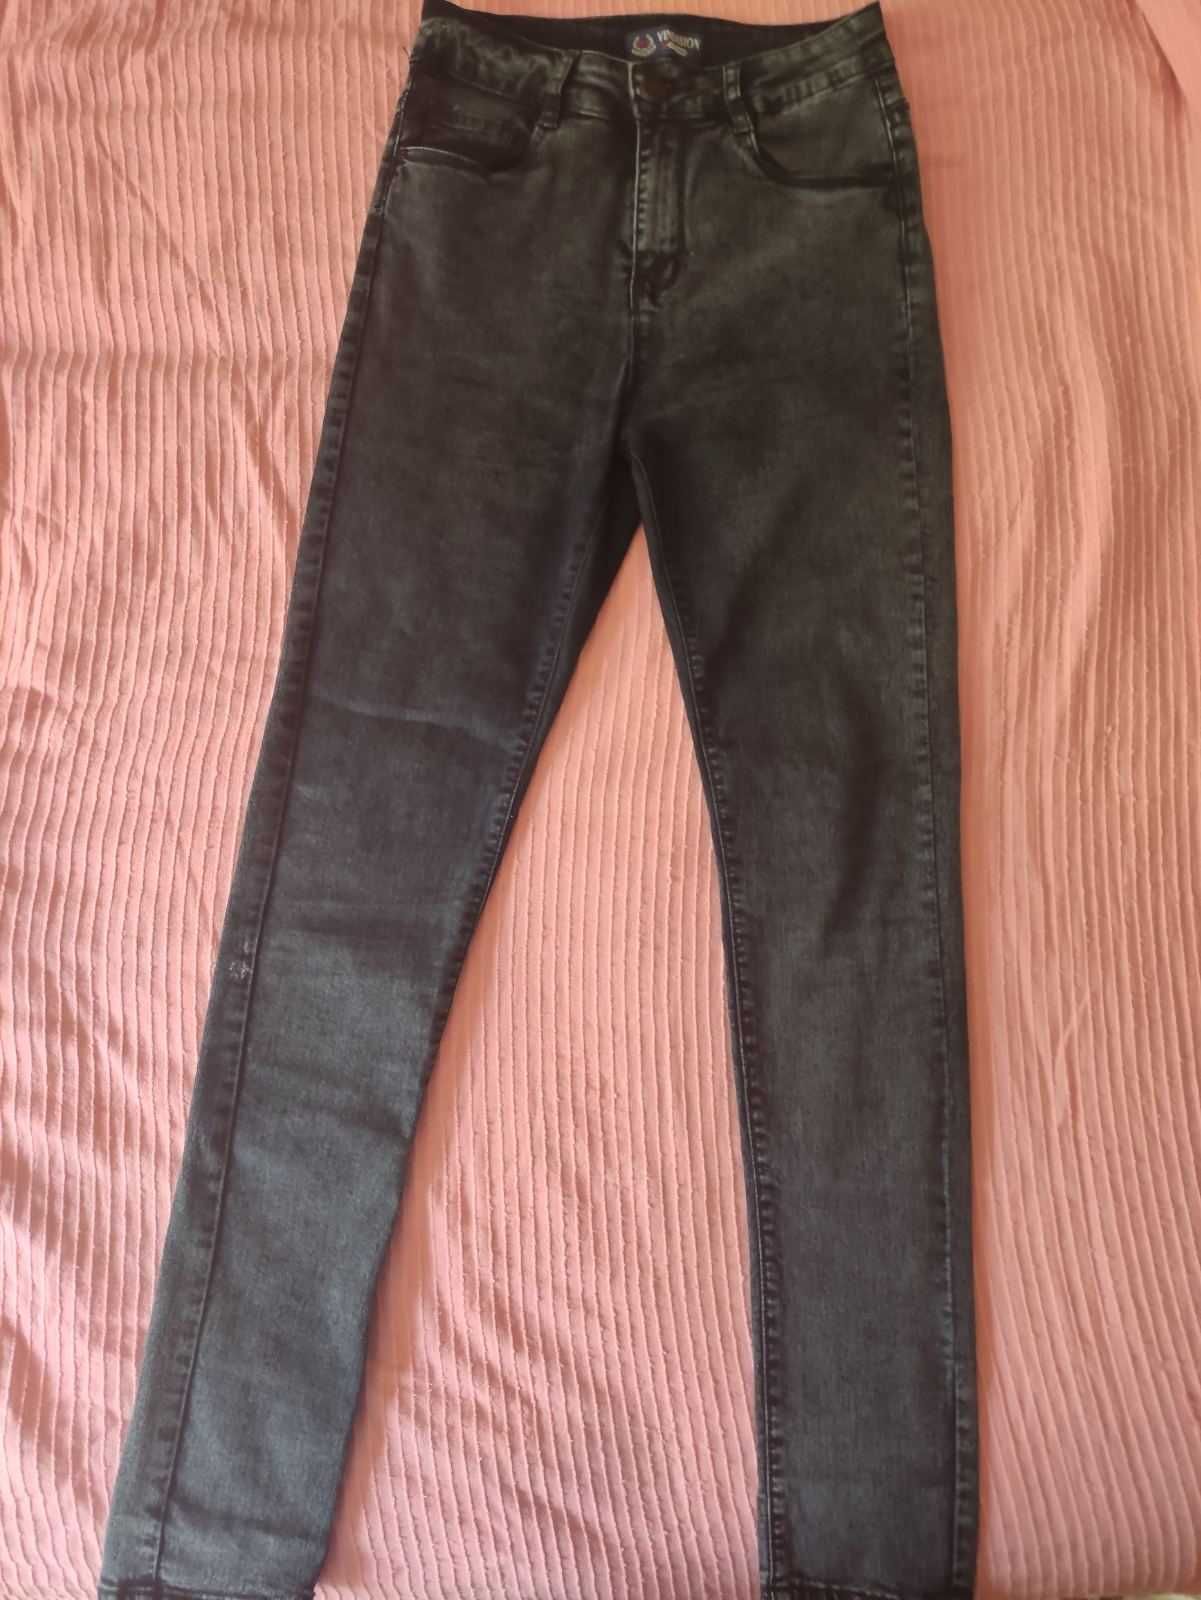 Новые темно серые джинсы. Размер 30